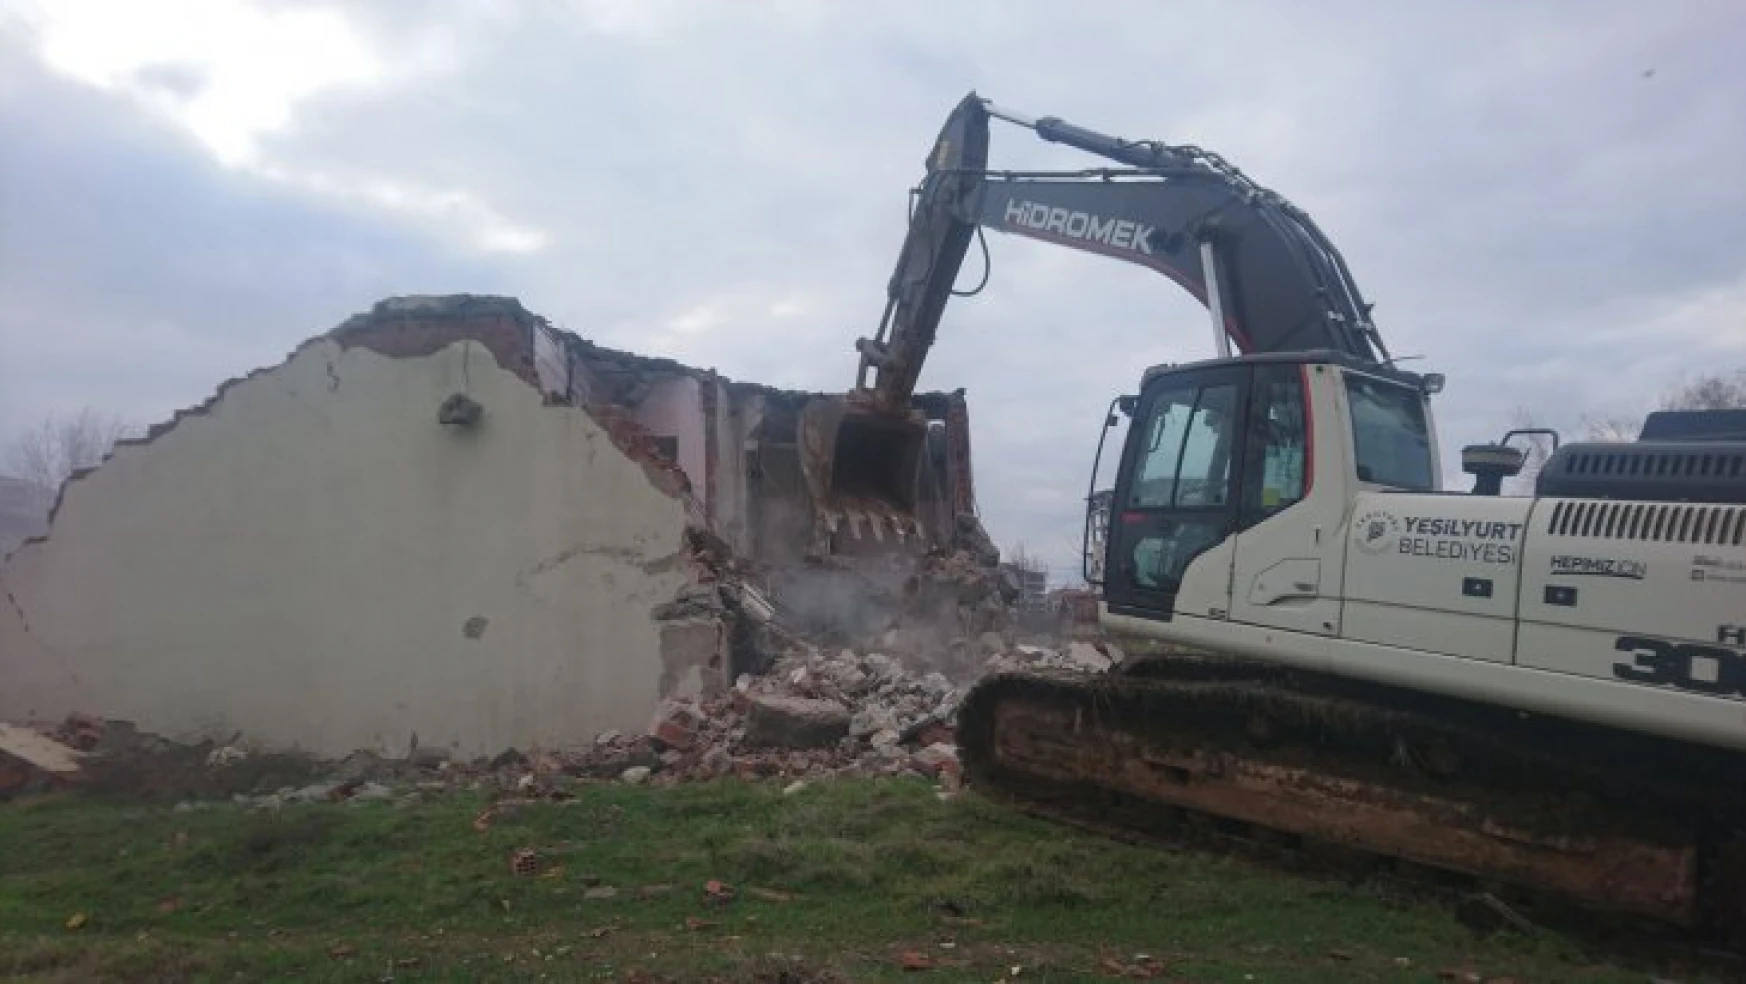 Yeşilyurt Belediyesi 6 Yılda 253 Adet Metruk Evin Yıkımını Gerçekleştirdi